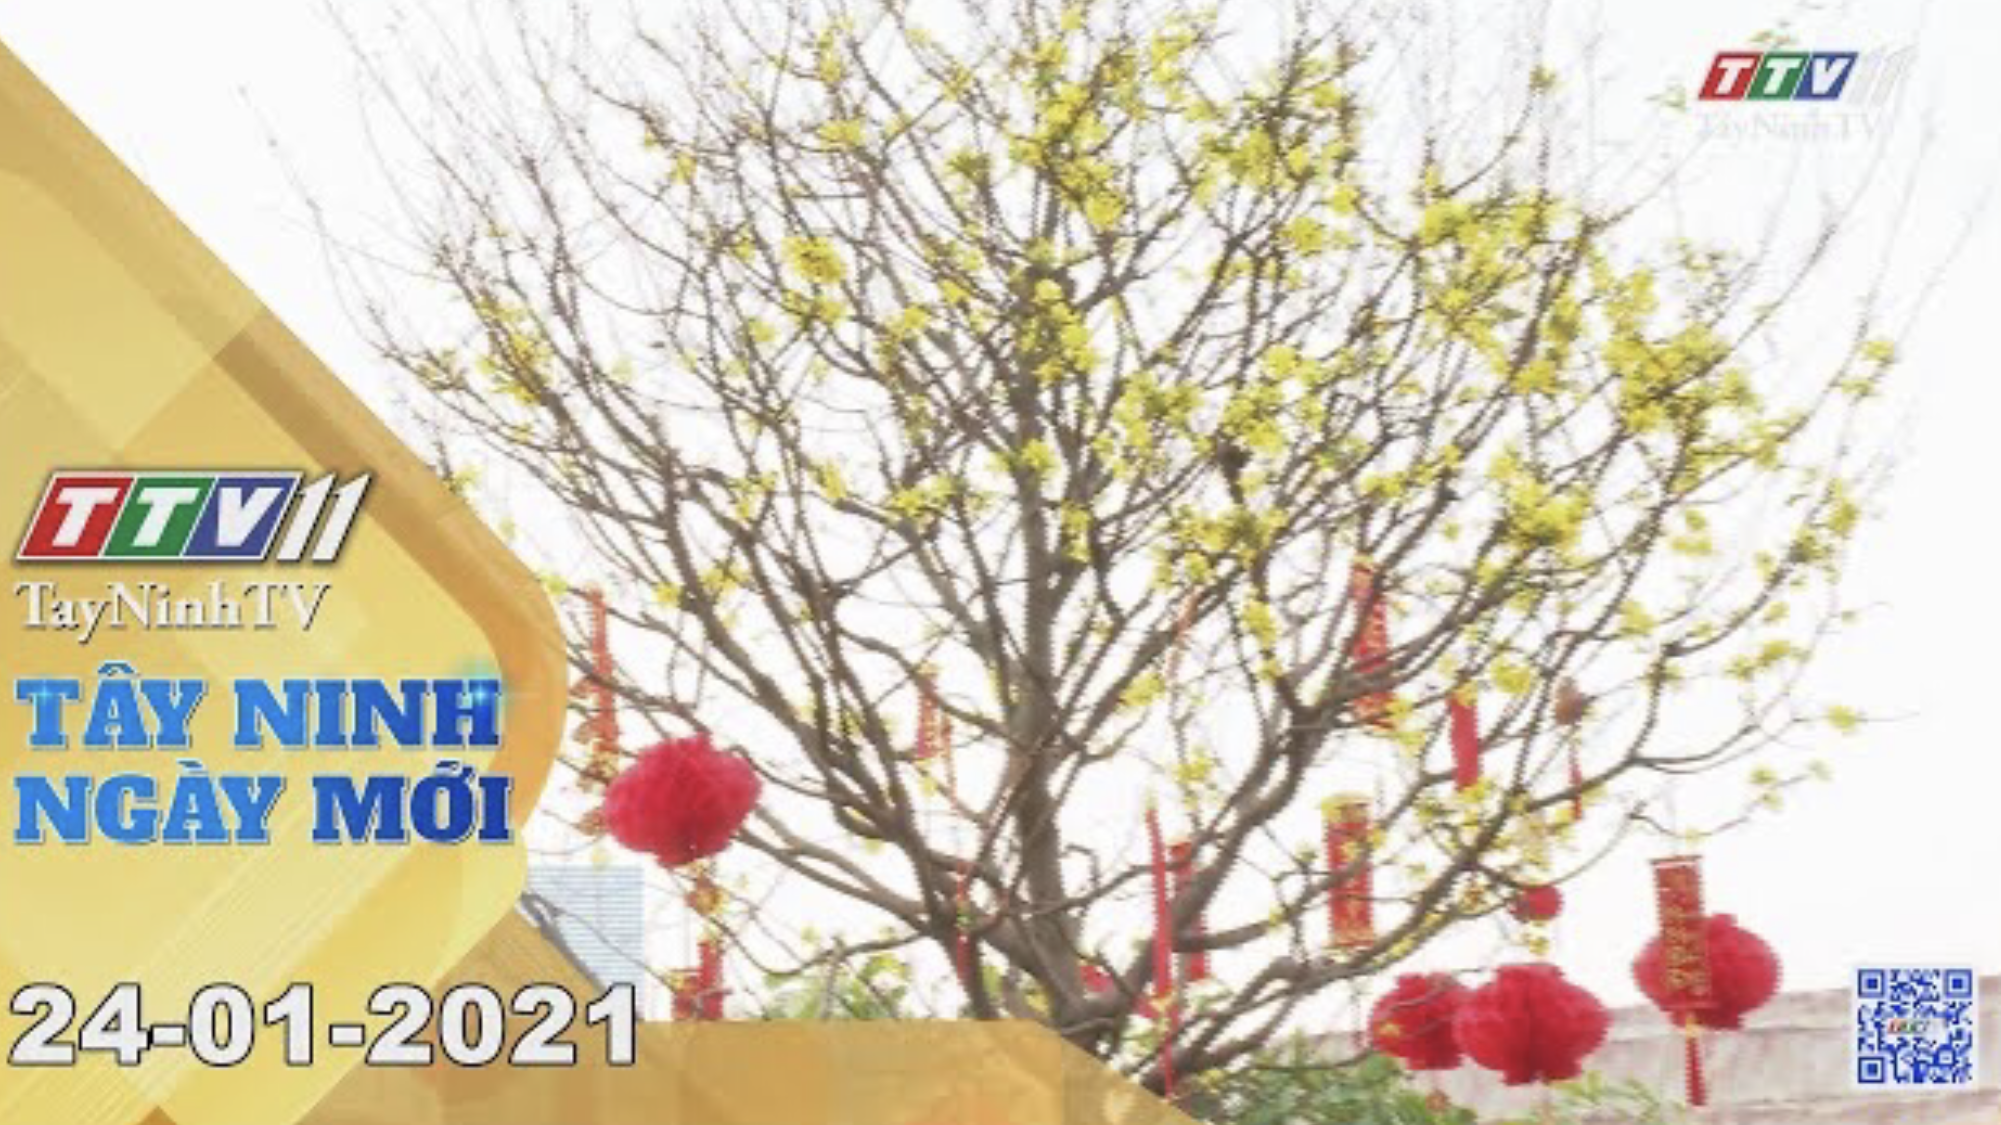 Tây Ninh Ngày Mới 24-01-2021 | Tin tức hôm nay | TayNinhTV